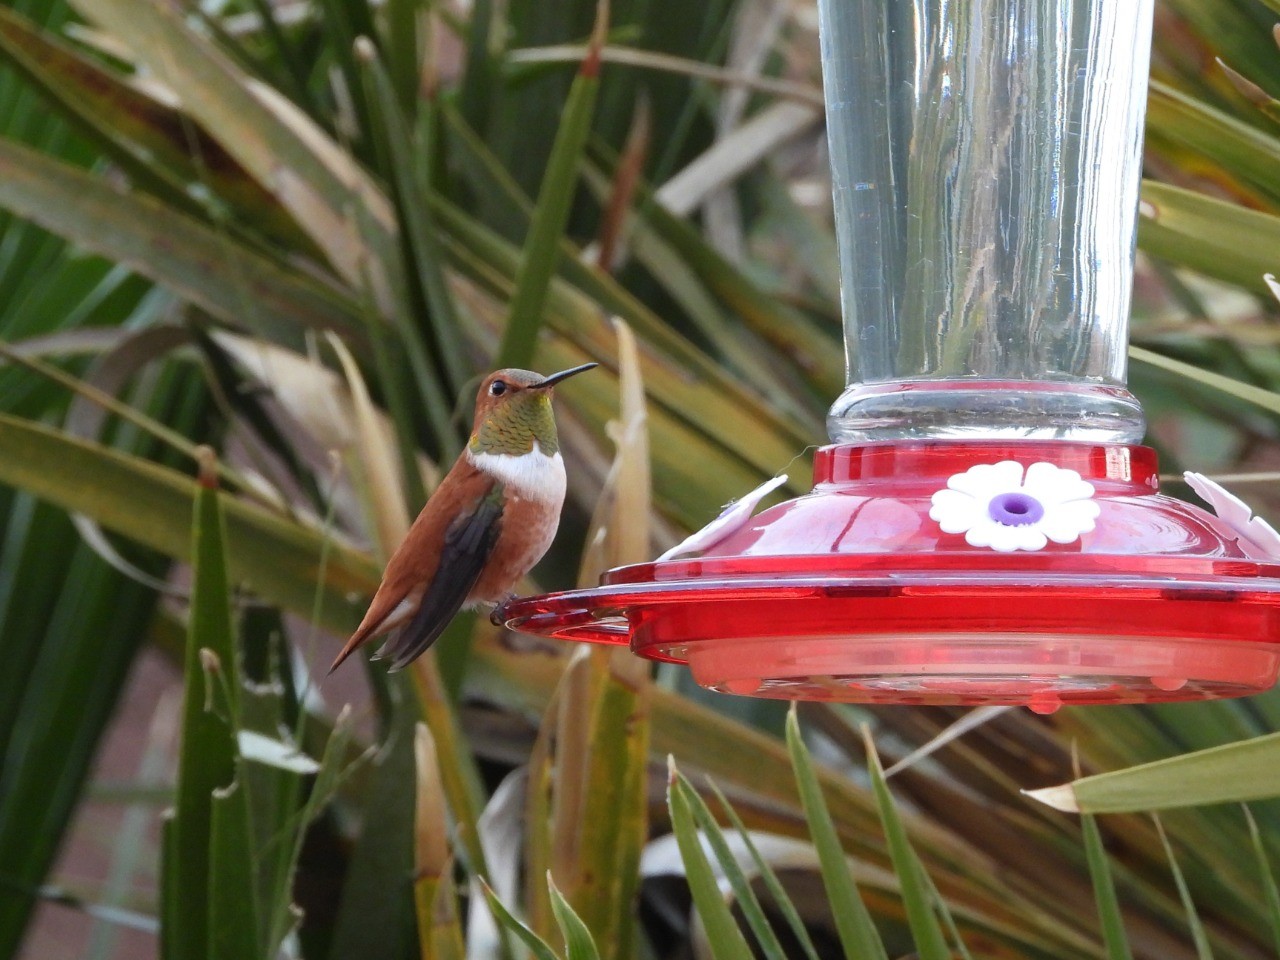 male Rufous hummingbird at feeder